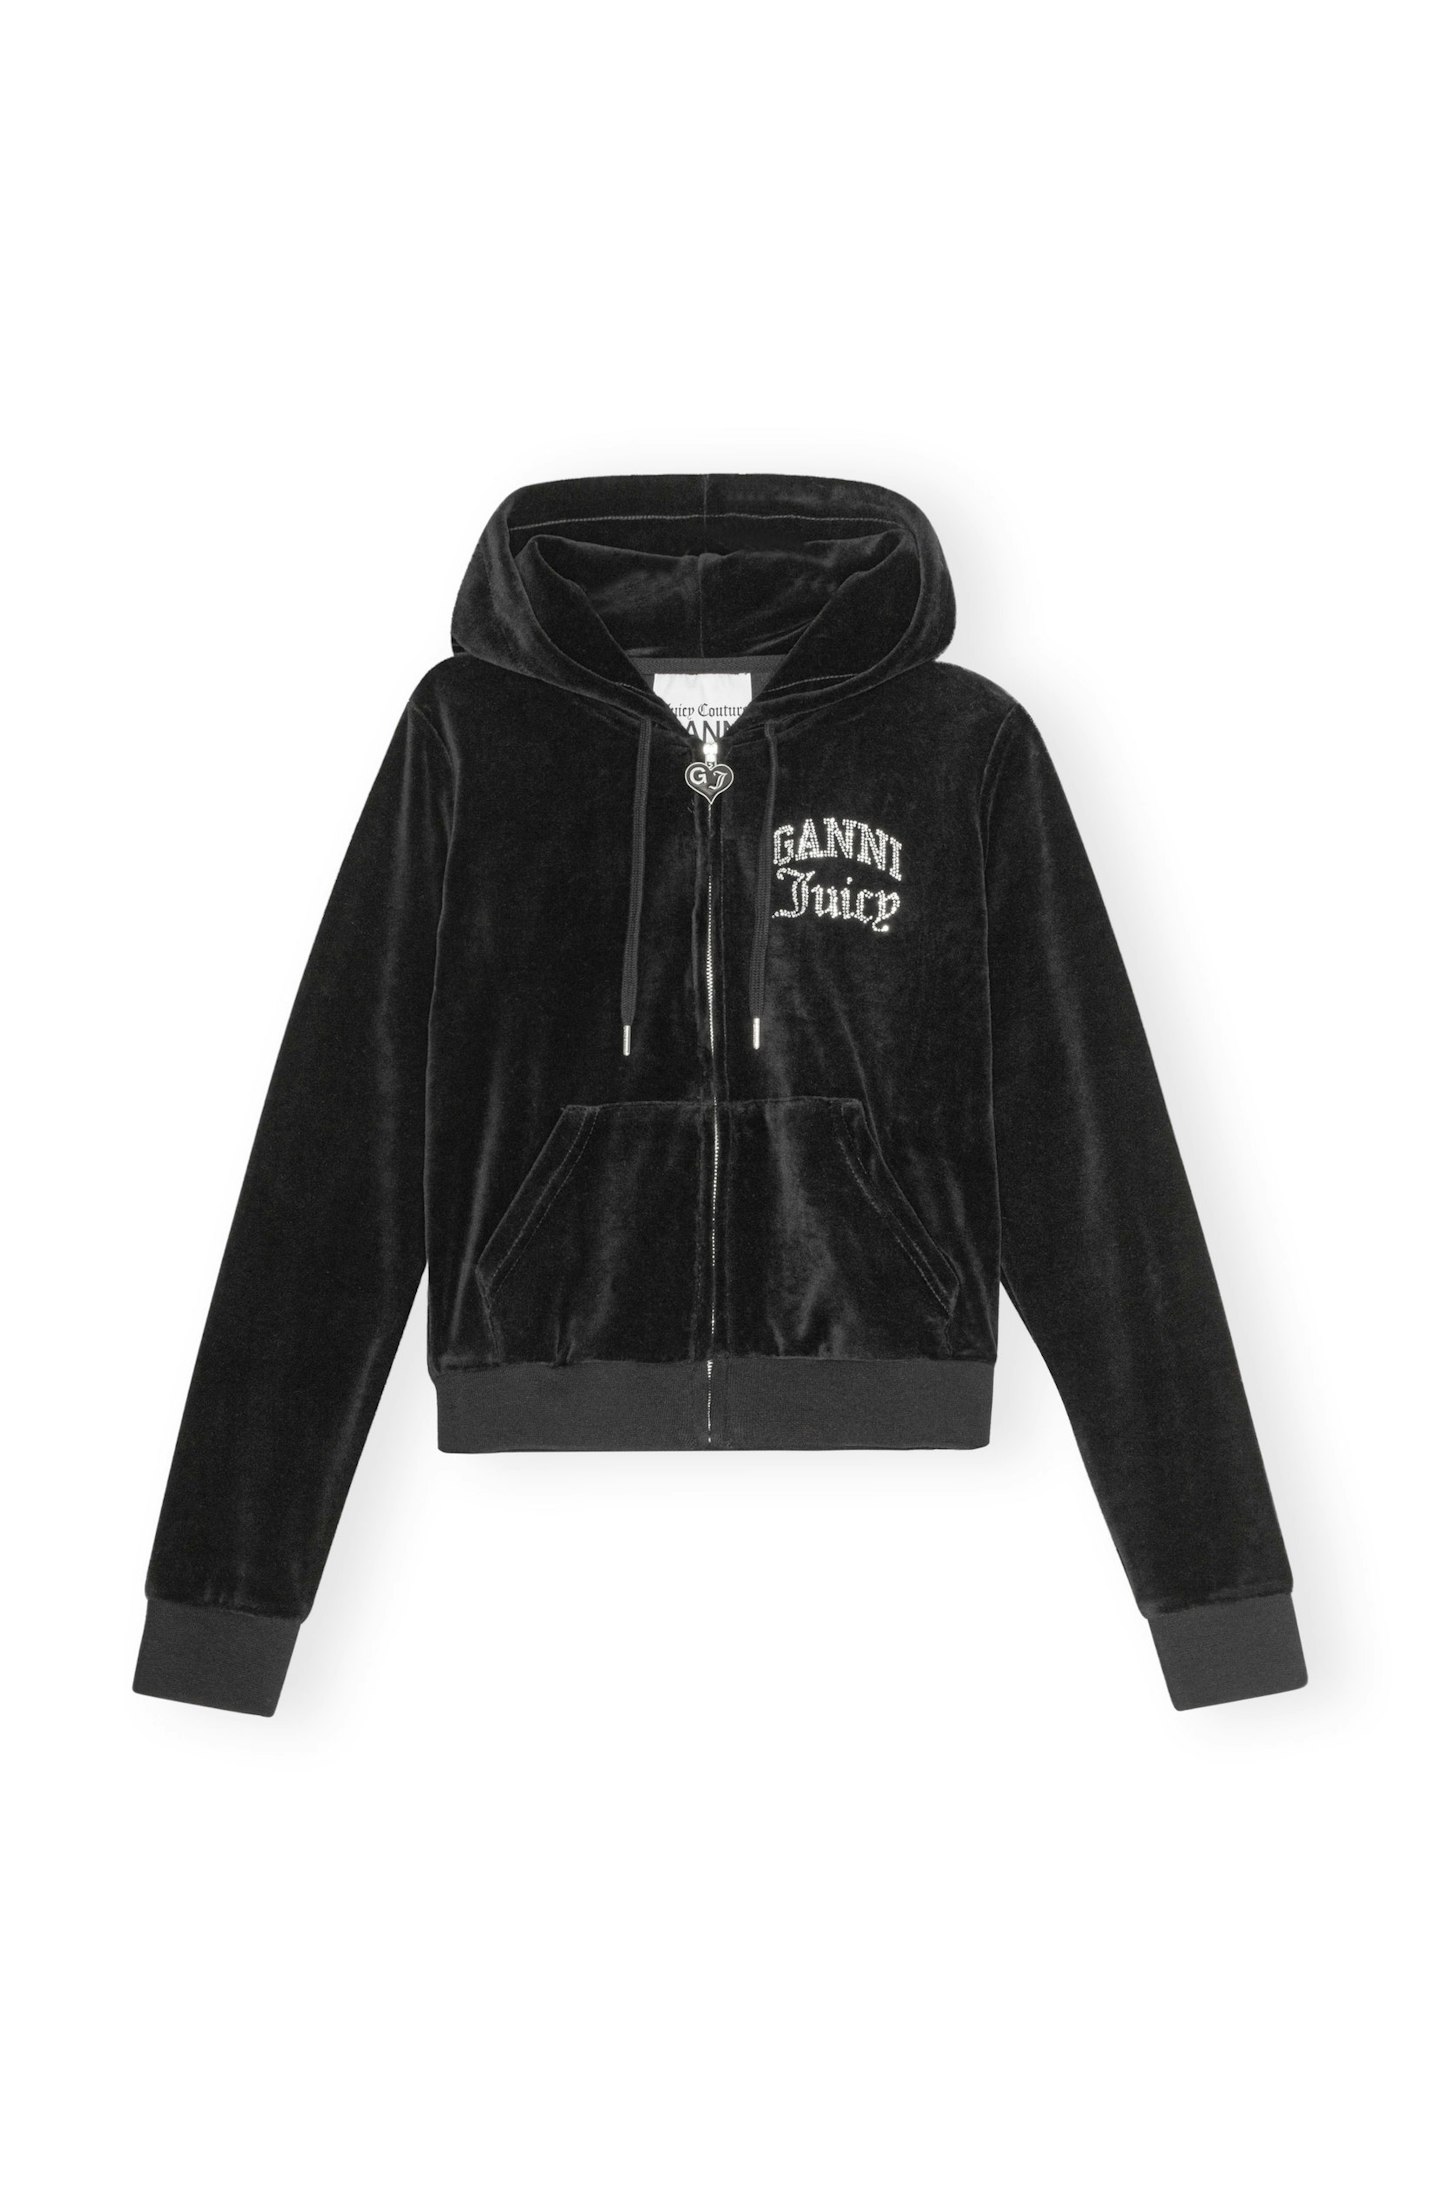 GANNI x Juicy Couture Velvet Track Zipper Hoodie Sweatshirt, £175